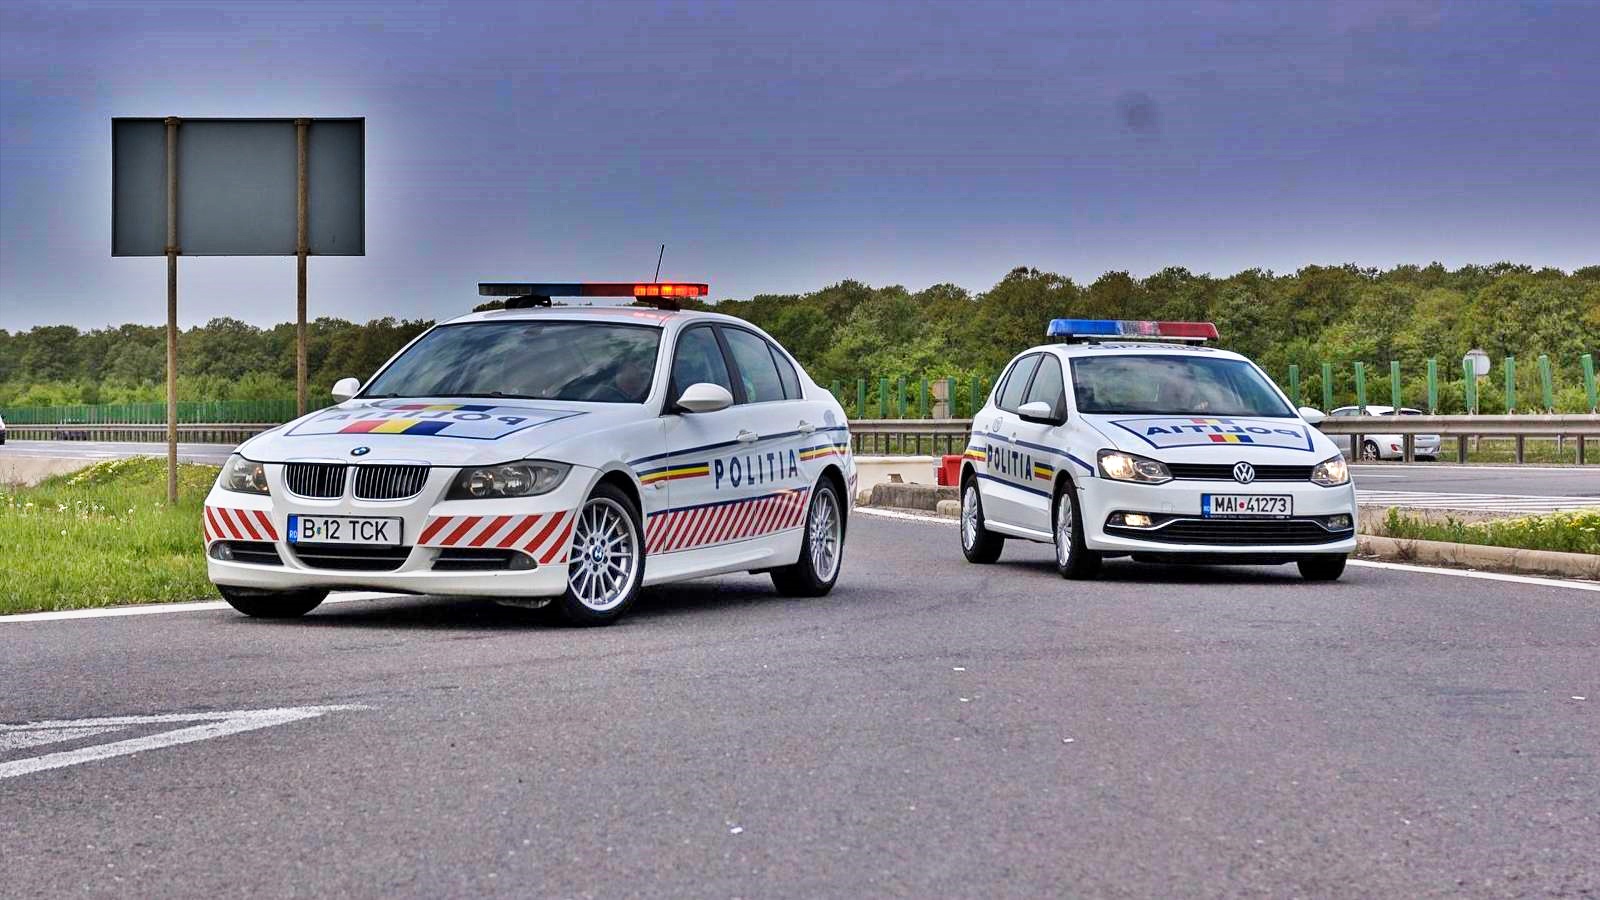 Rowerzyści ostrzegani przez rumuńską policję Wielu Rumunów popełnia błędy